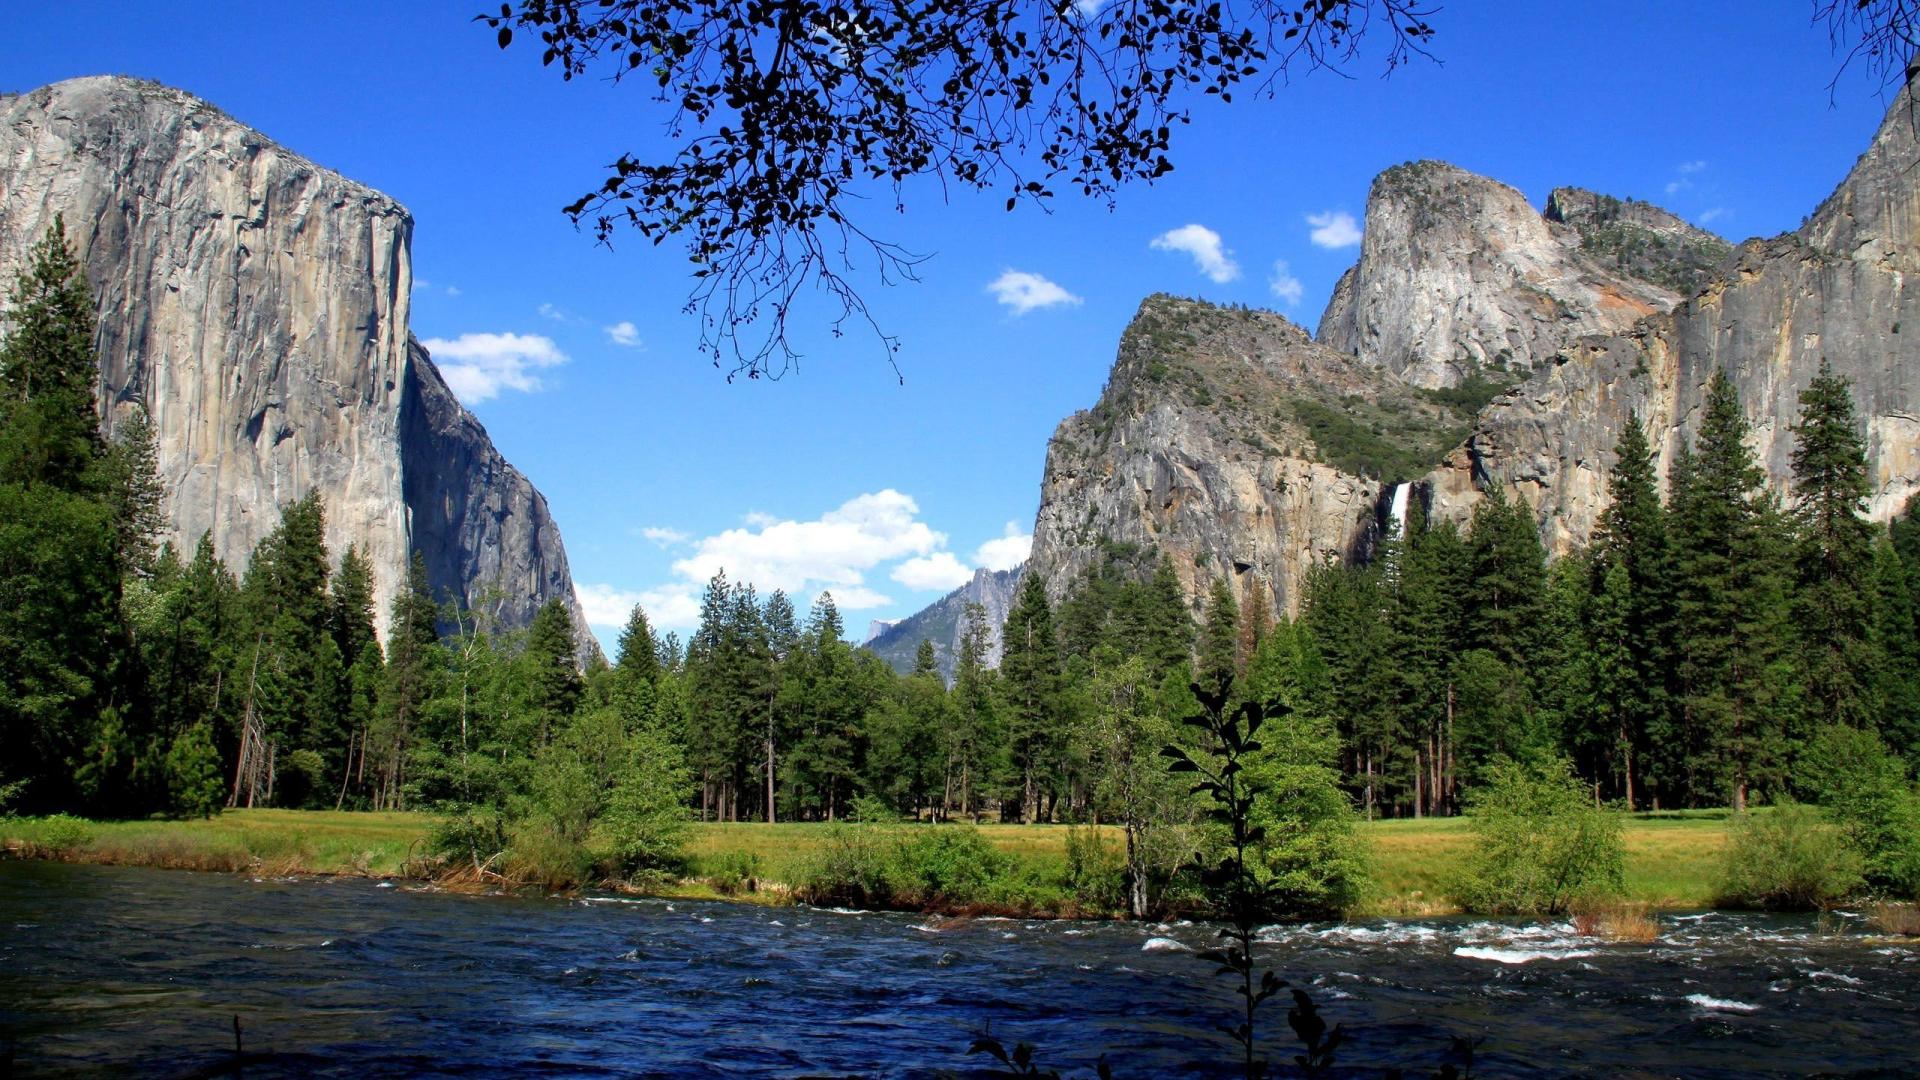 Mac Os X Yosemite 10.11 Download